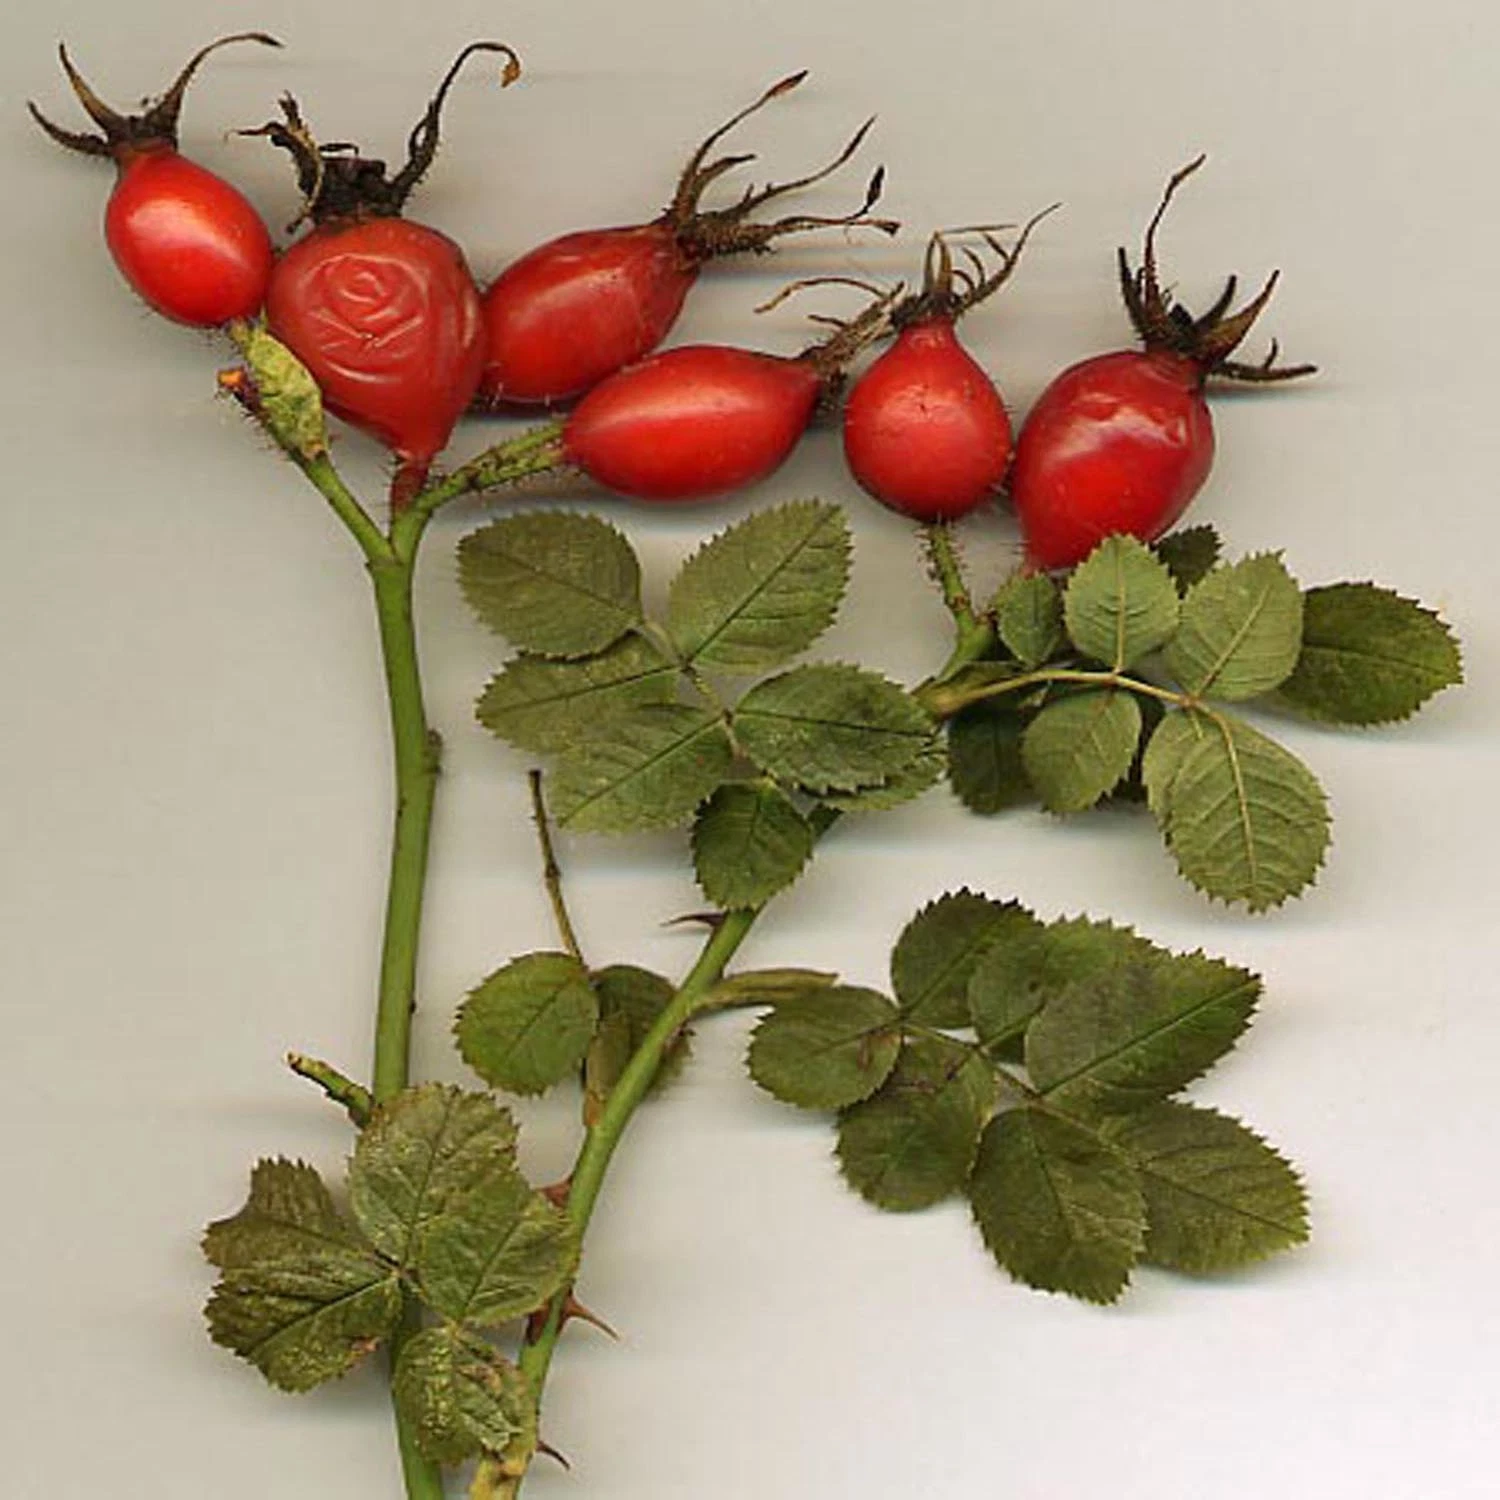 Rosa Mosqueta, Fructus Rosae, salvaje, fruto de Rosa Mosqueta Rosa Mosqueta en polvo, extracto de Rosa Mosqueta